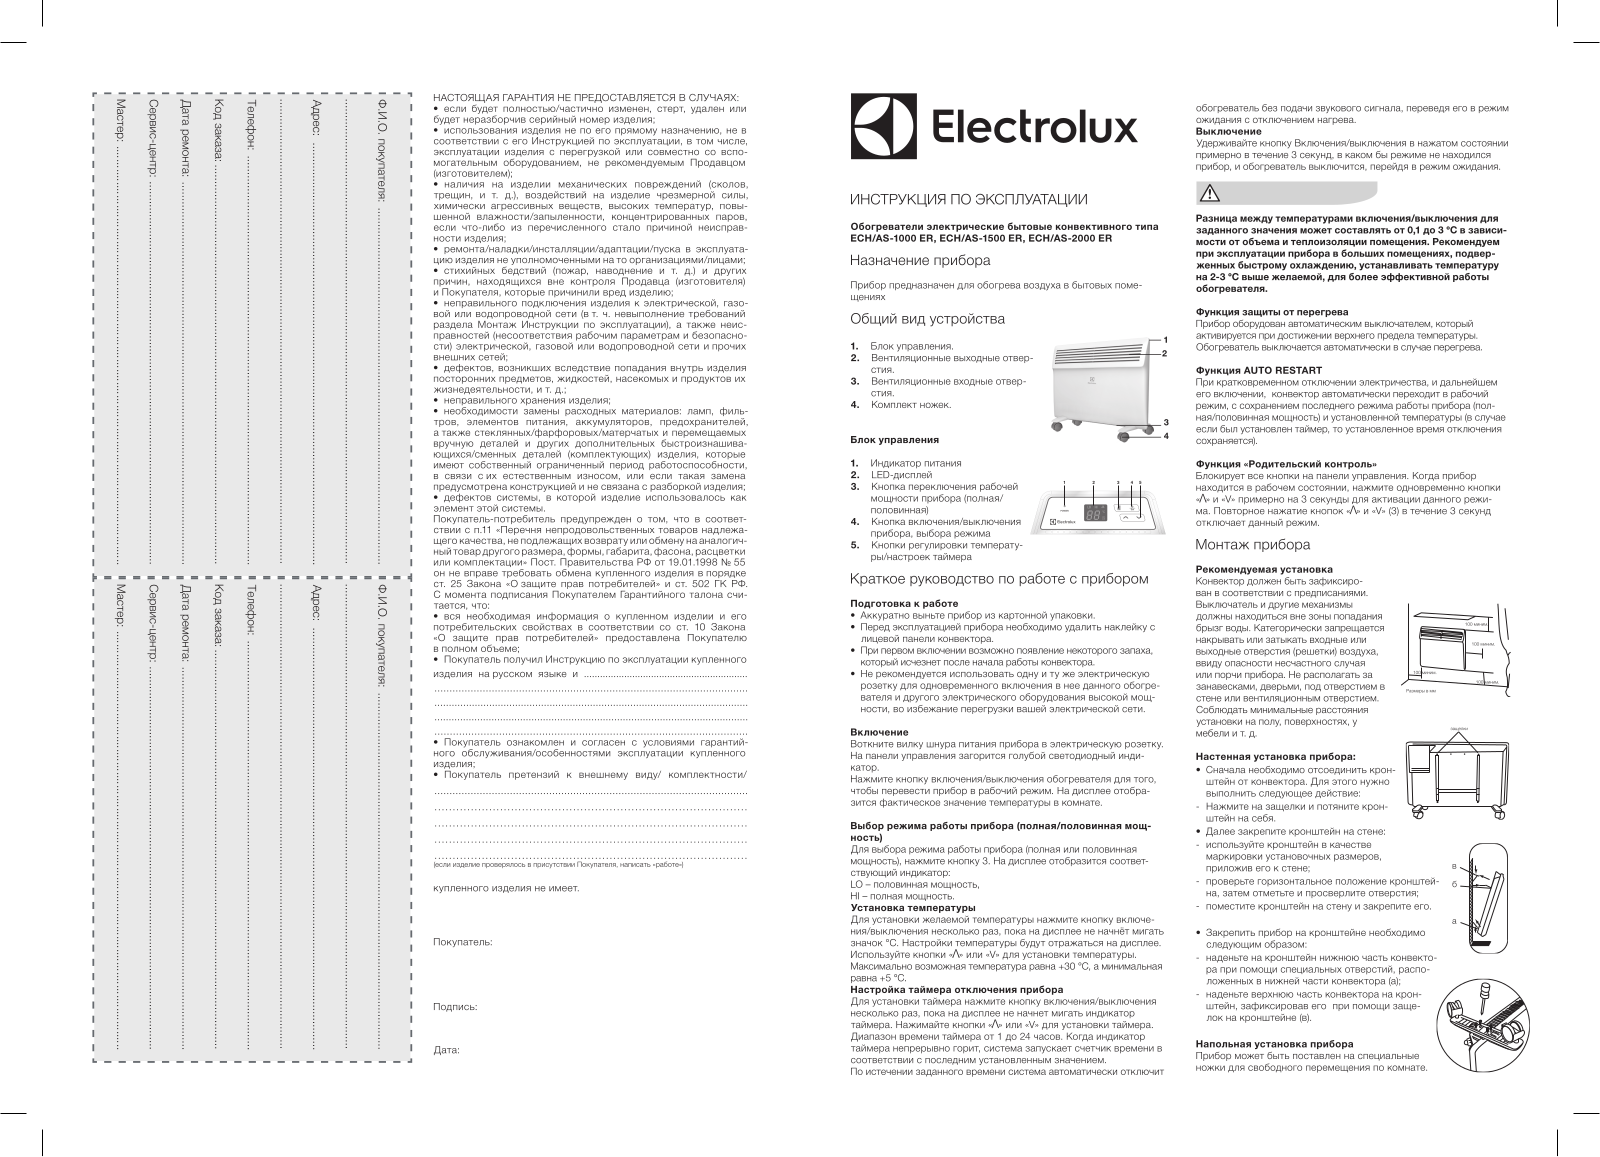 Electrolux ECH/AS-1000 User Manual